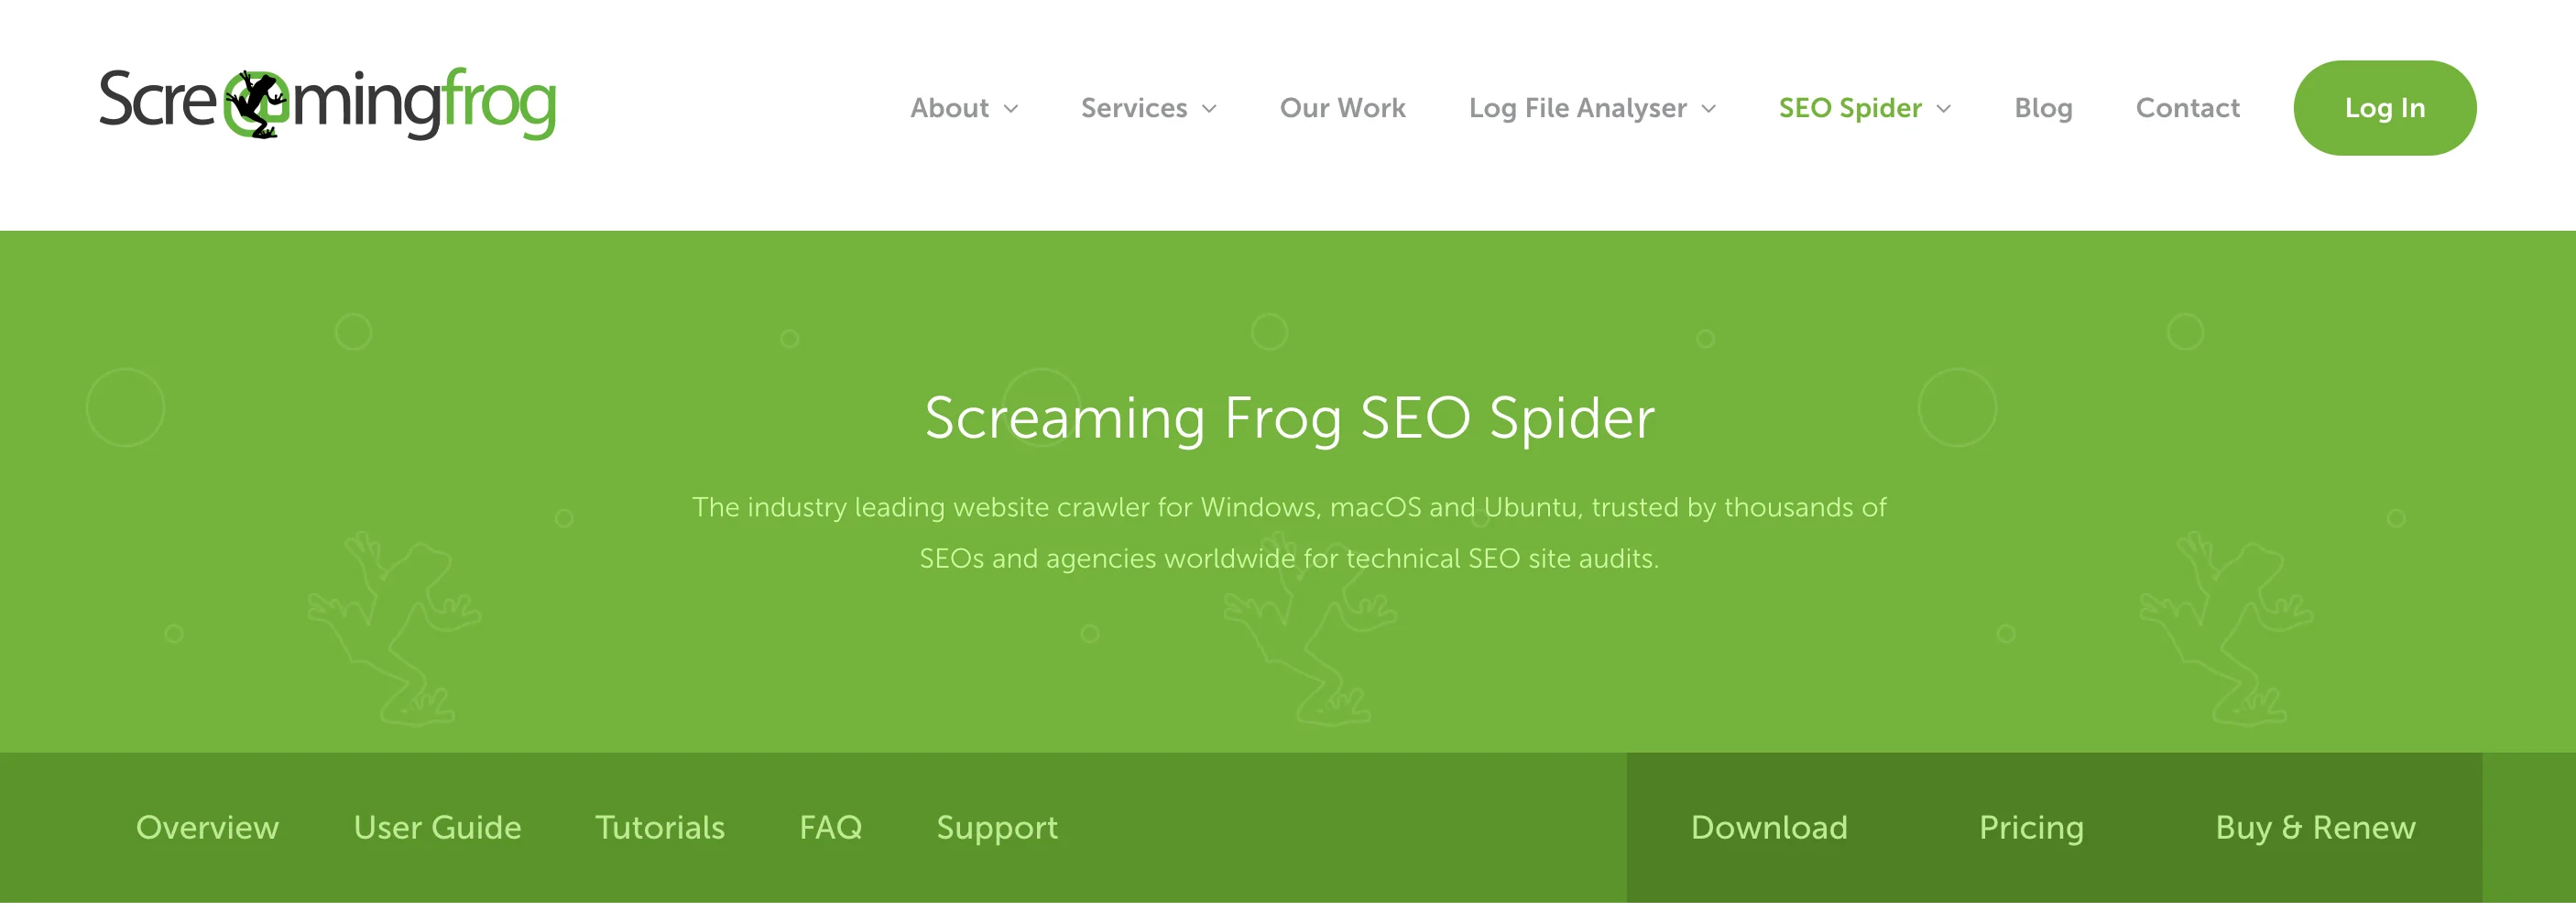 Screaming Frog homepage